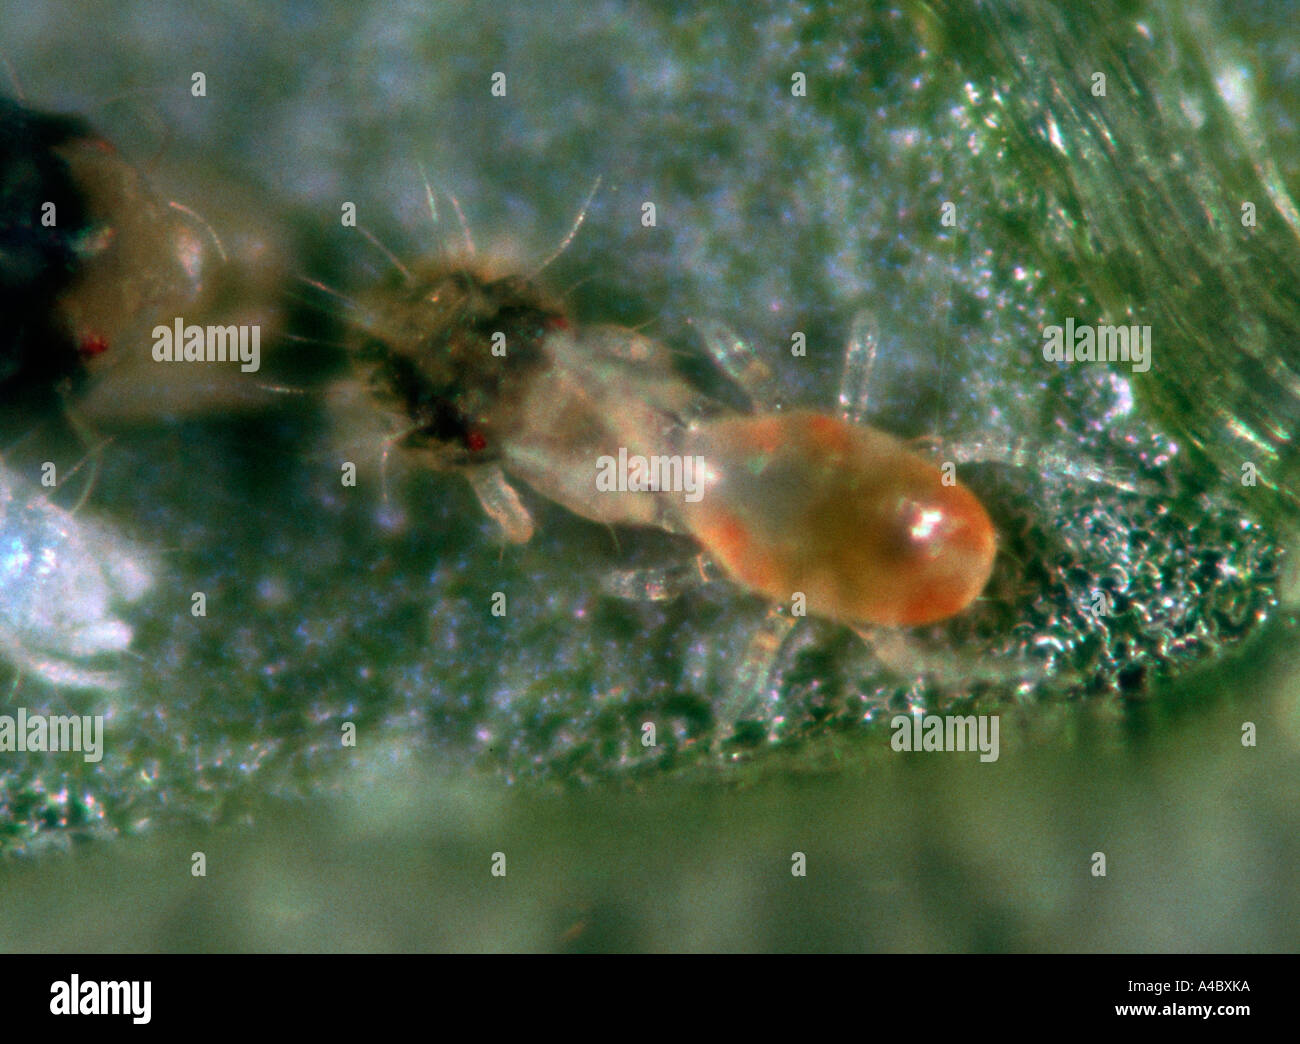 Predatory mite Typhlodromus pyri feeding on Panonychus ulmi prey mite Stock Photo